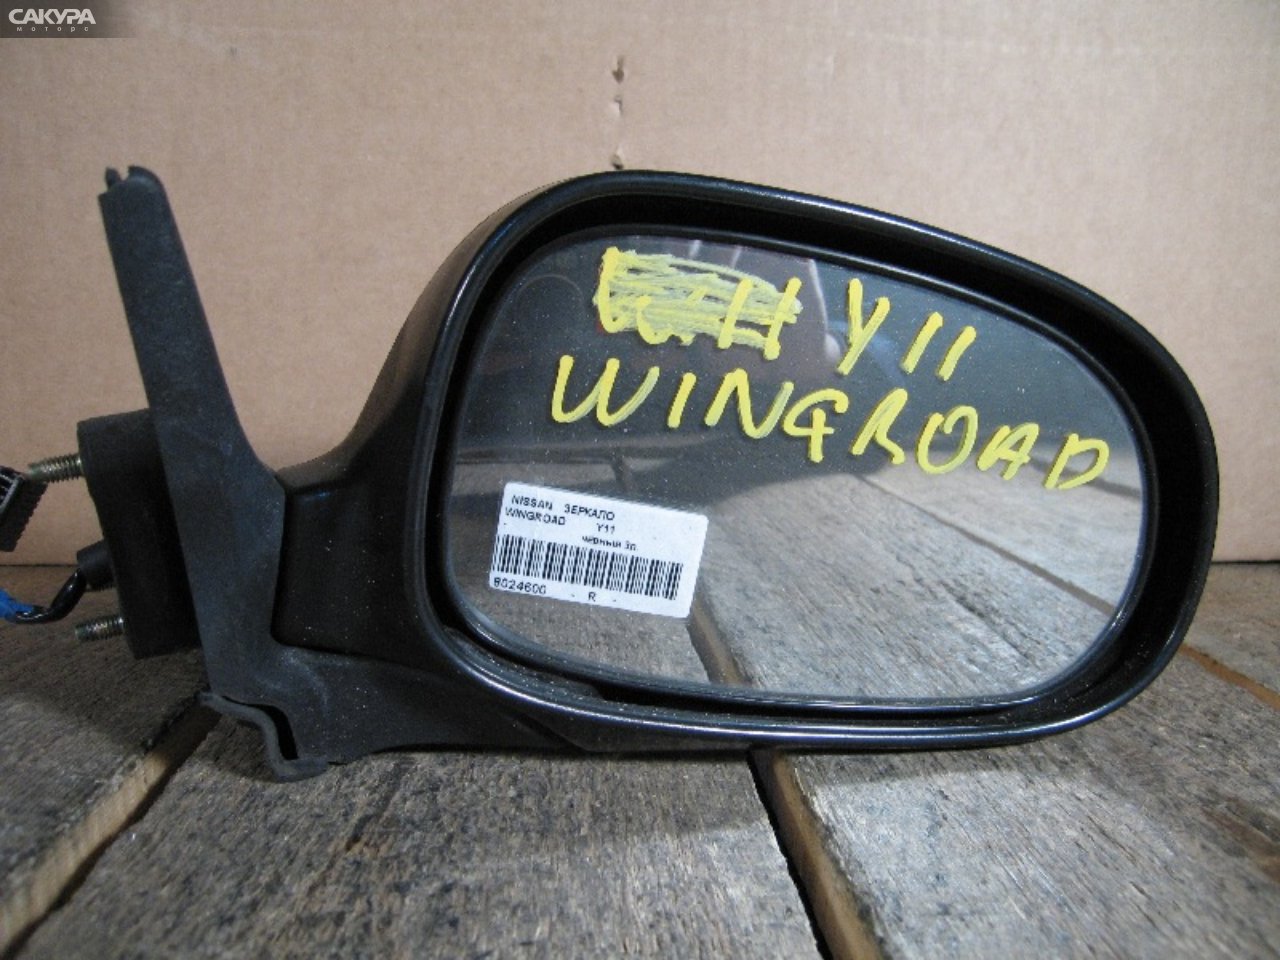 Зеркало боковое правое Nissan Wingroad WFY11: купить в Сакура Абакан.